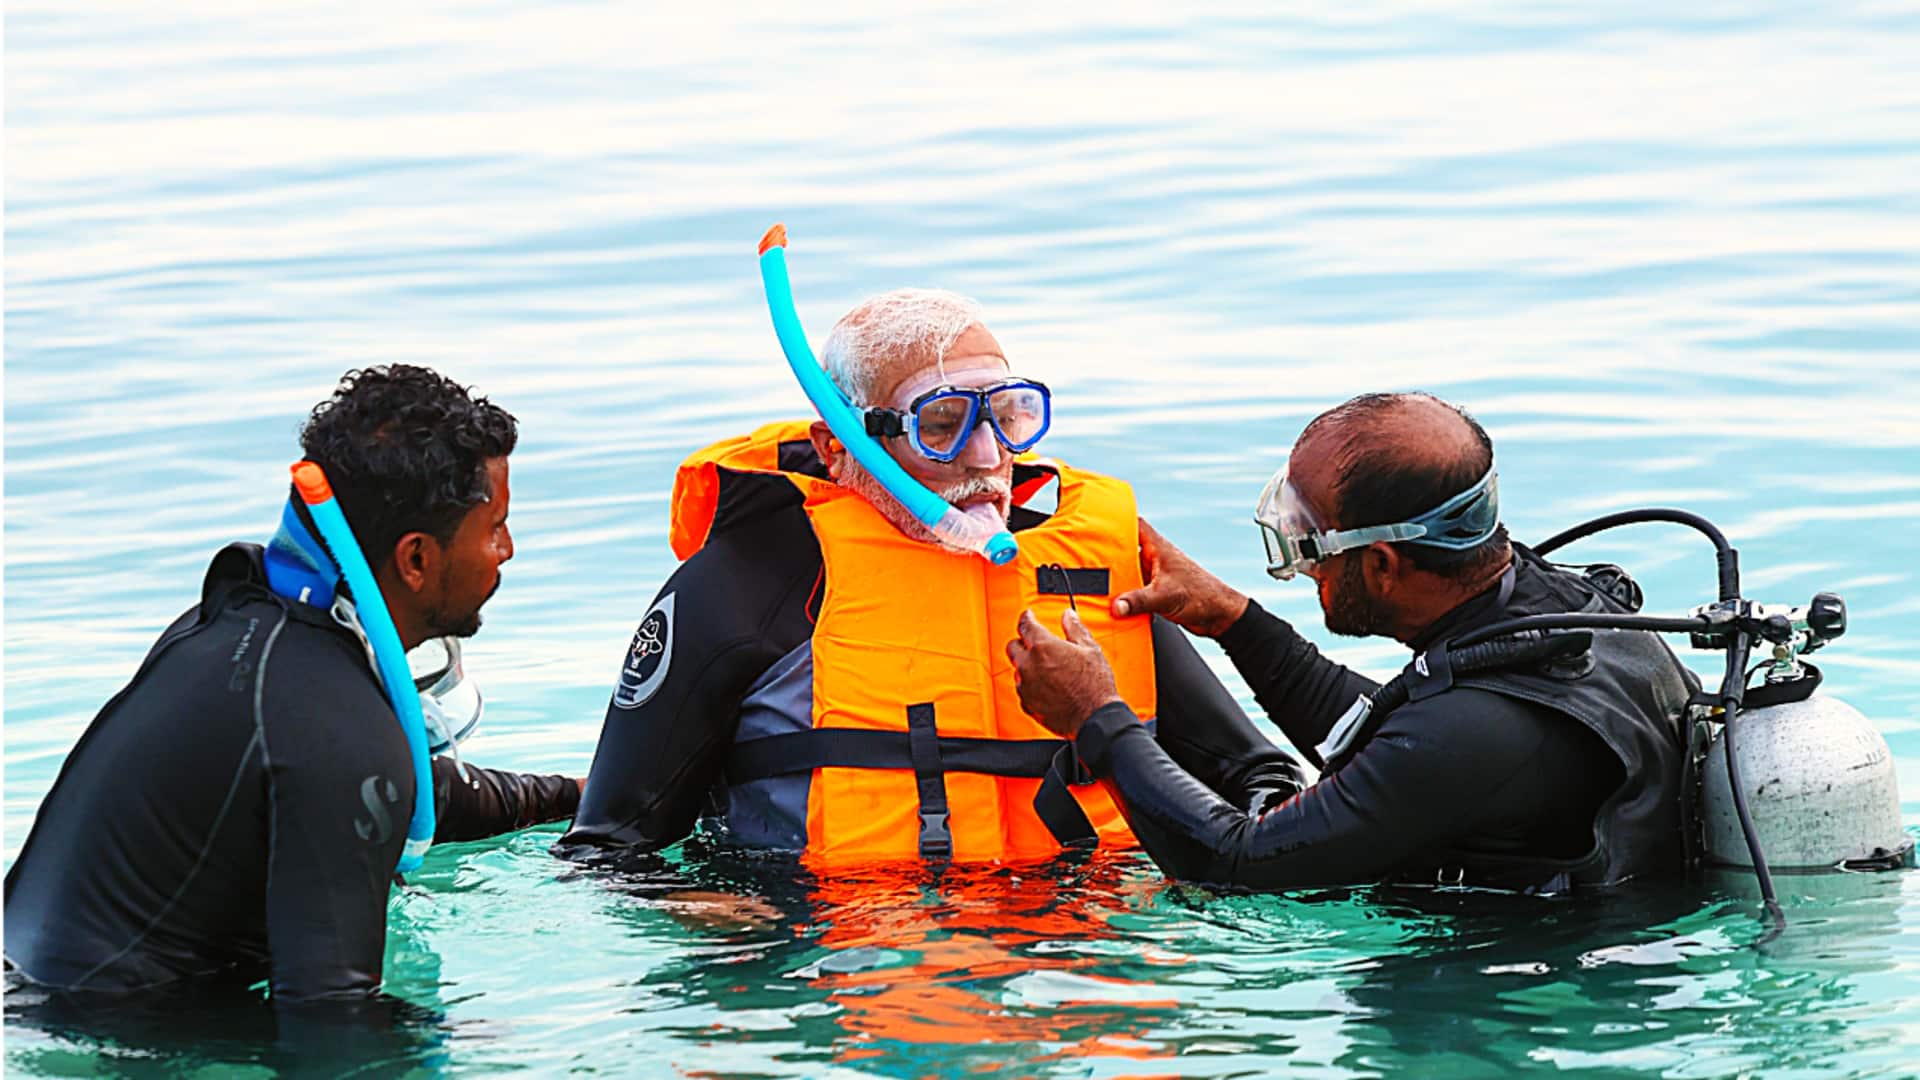  प्रधानमंत्री नरेंद्र मोदी लक्षद्वीप में एडवेंचर करते नजर आए, समुद्र में गोता लगाया